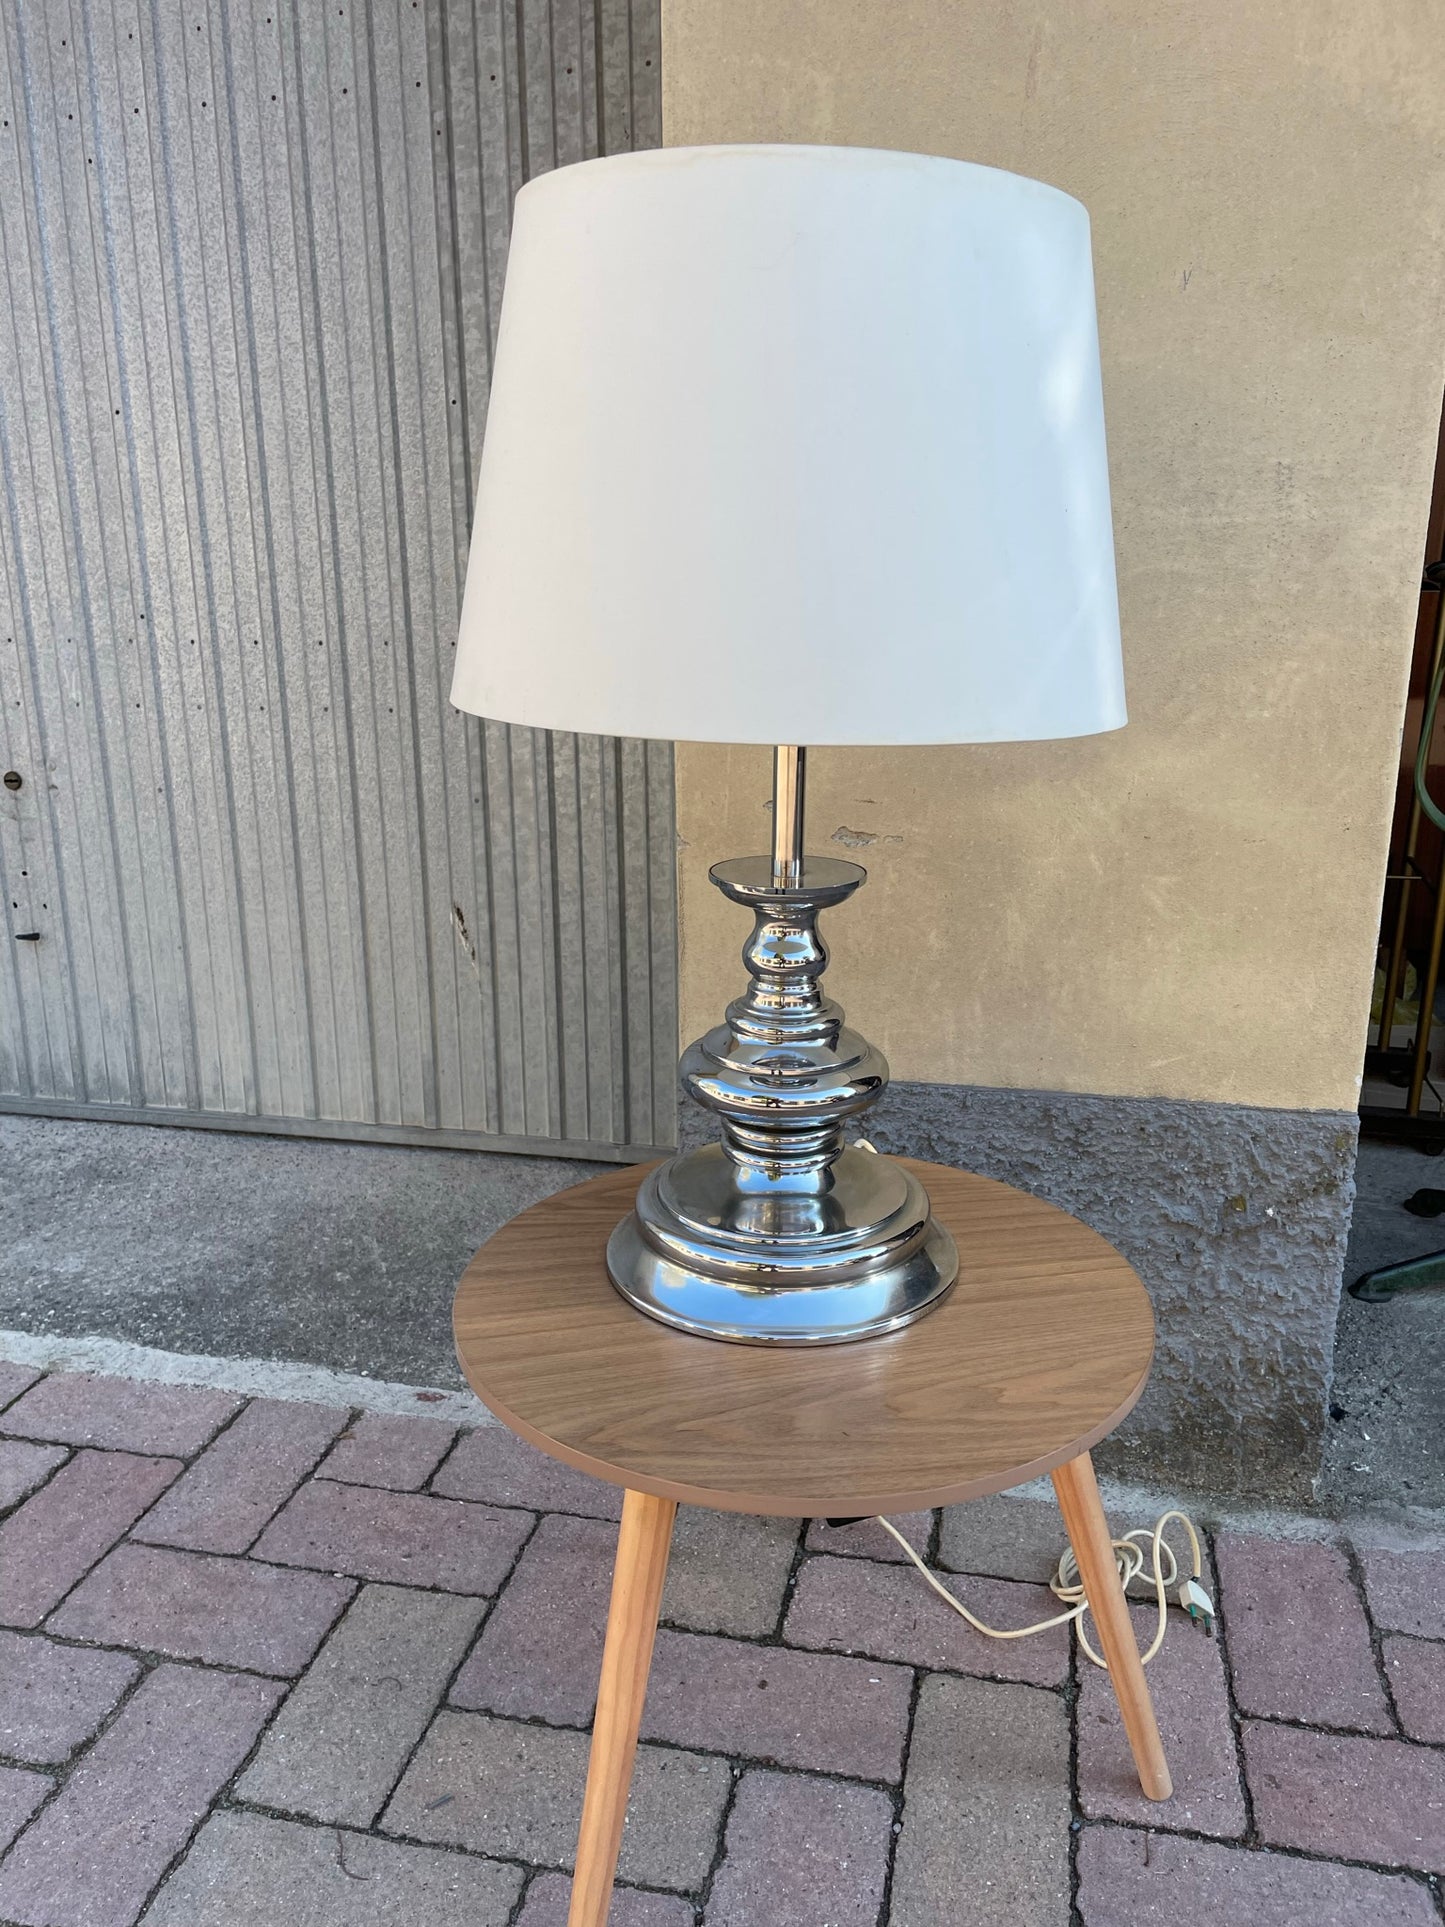 Reggiani Goffredo table lamp